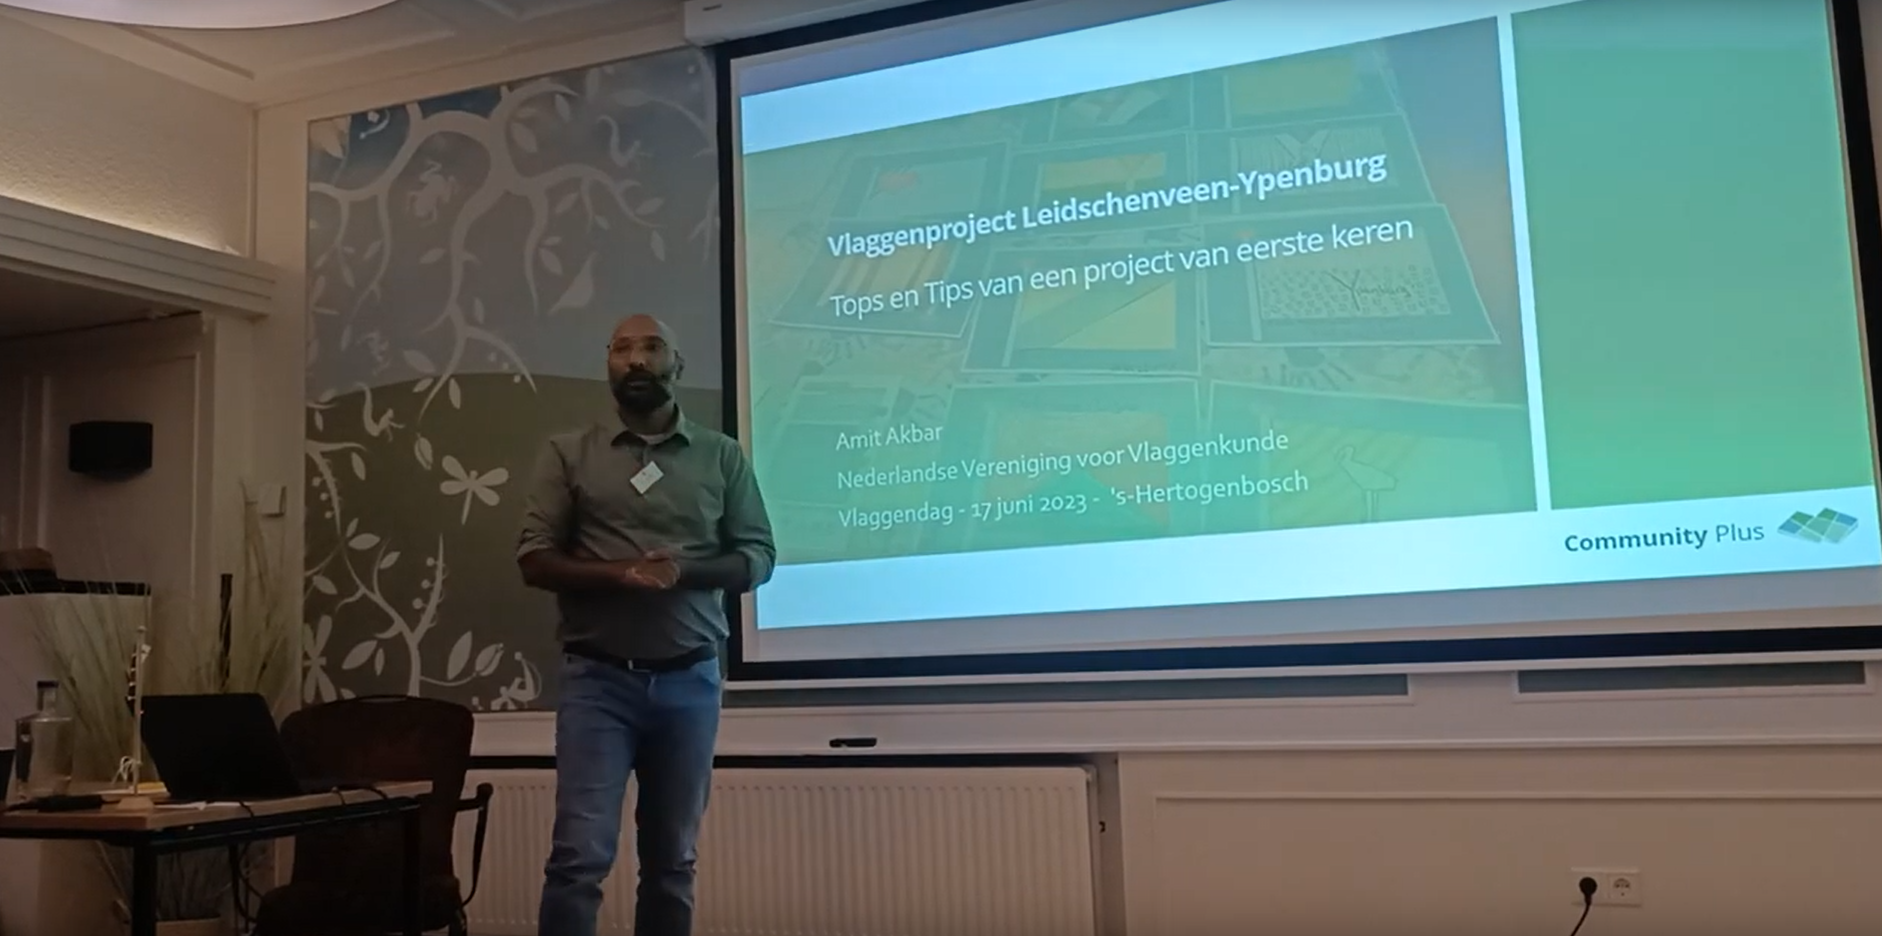 Amit Akbar over ontwerpwedstrijd wijkvlaggen Ypenburg en Leidschenveen